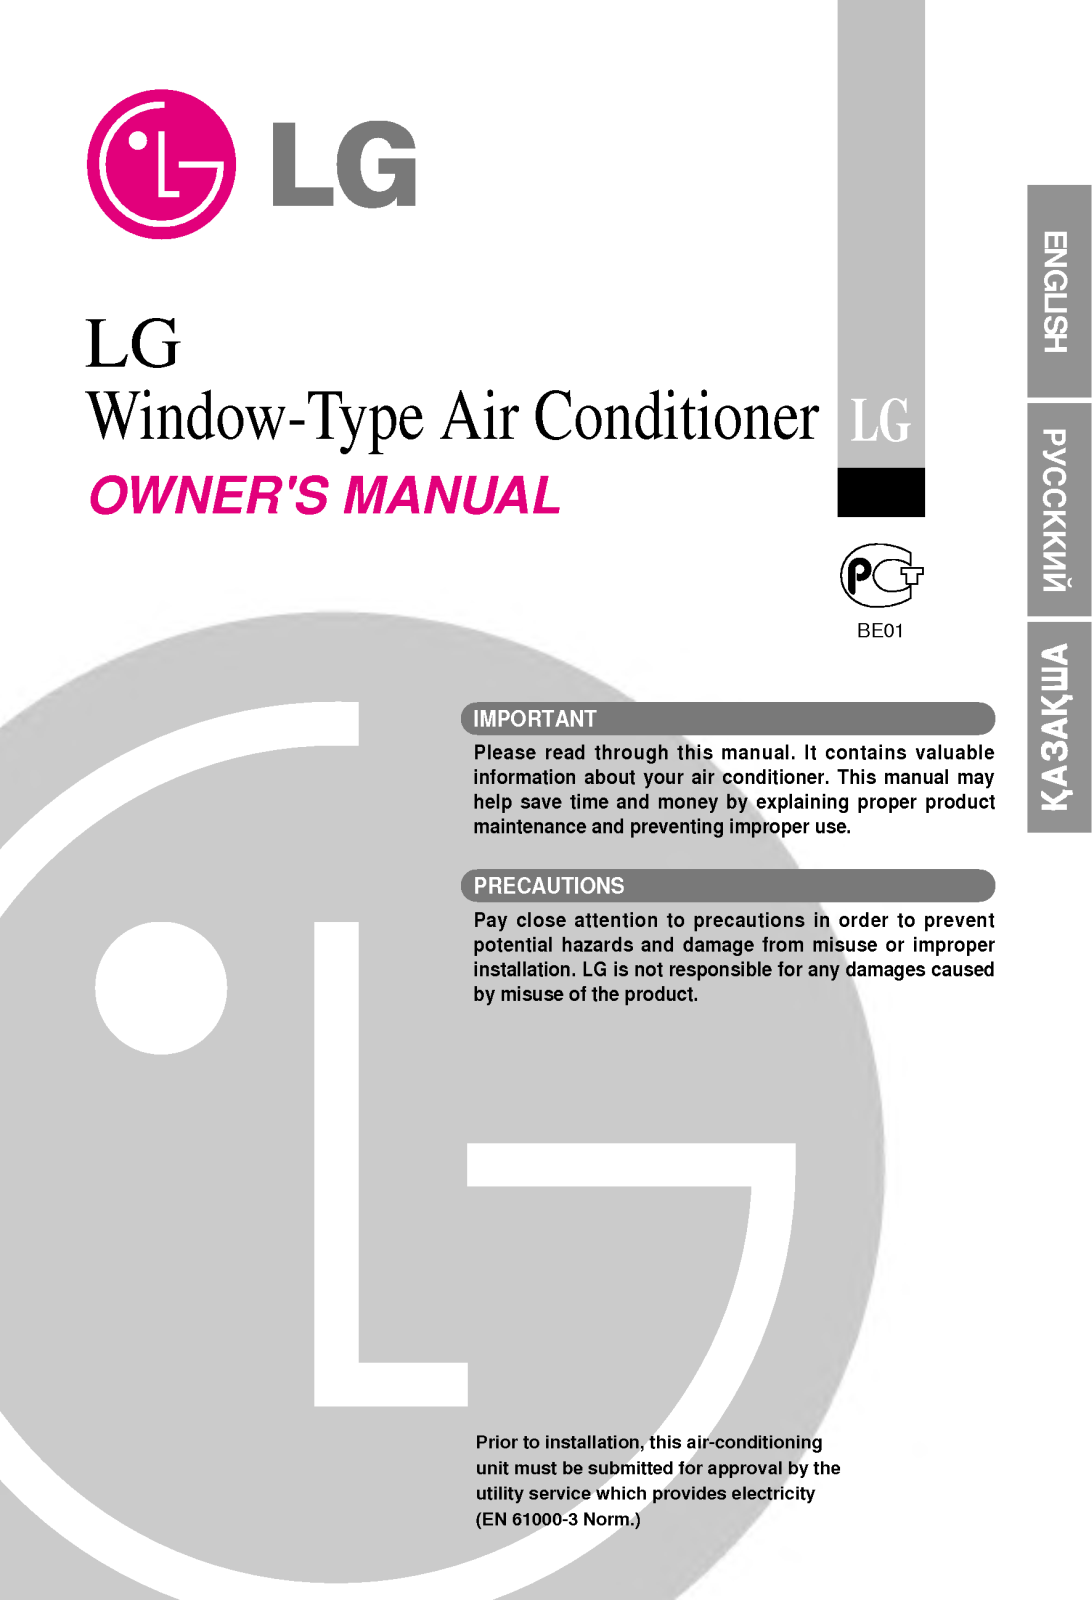 LG AGN08FB, AGN08FDM1, AGN08FCM1, AGV08FBM1 User Manual